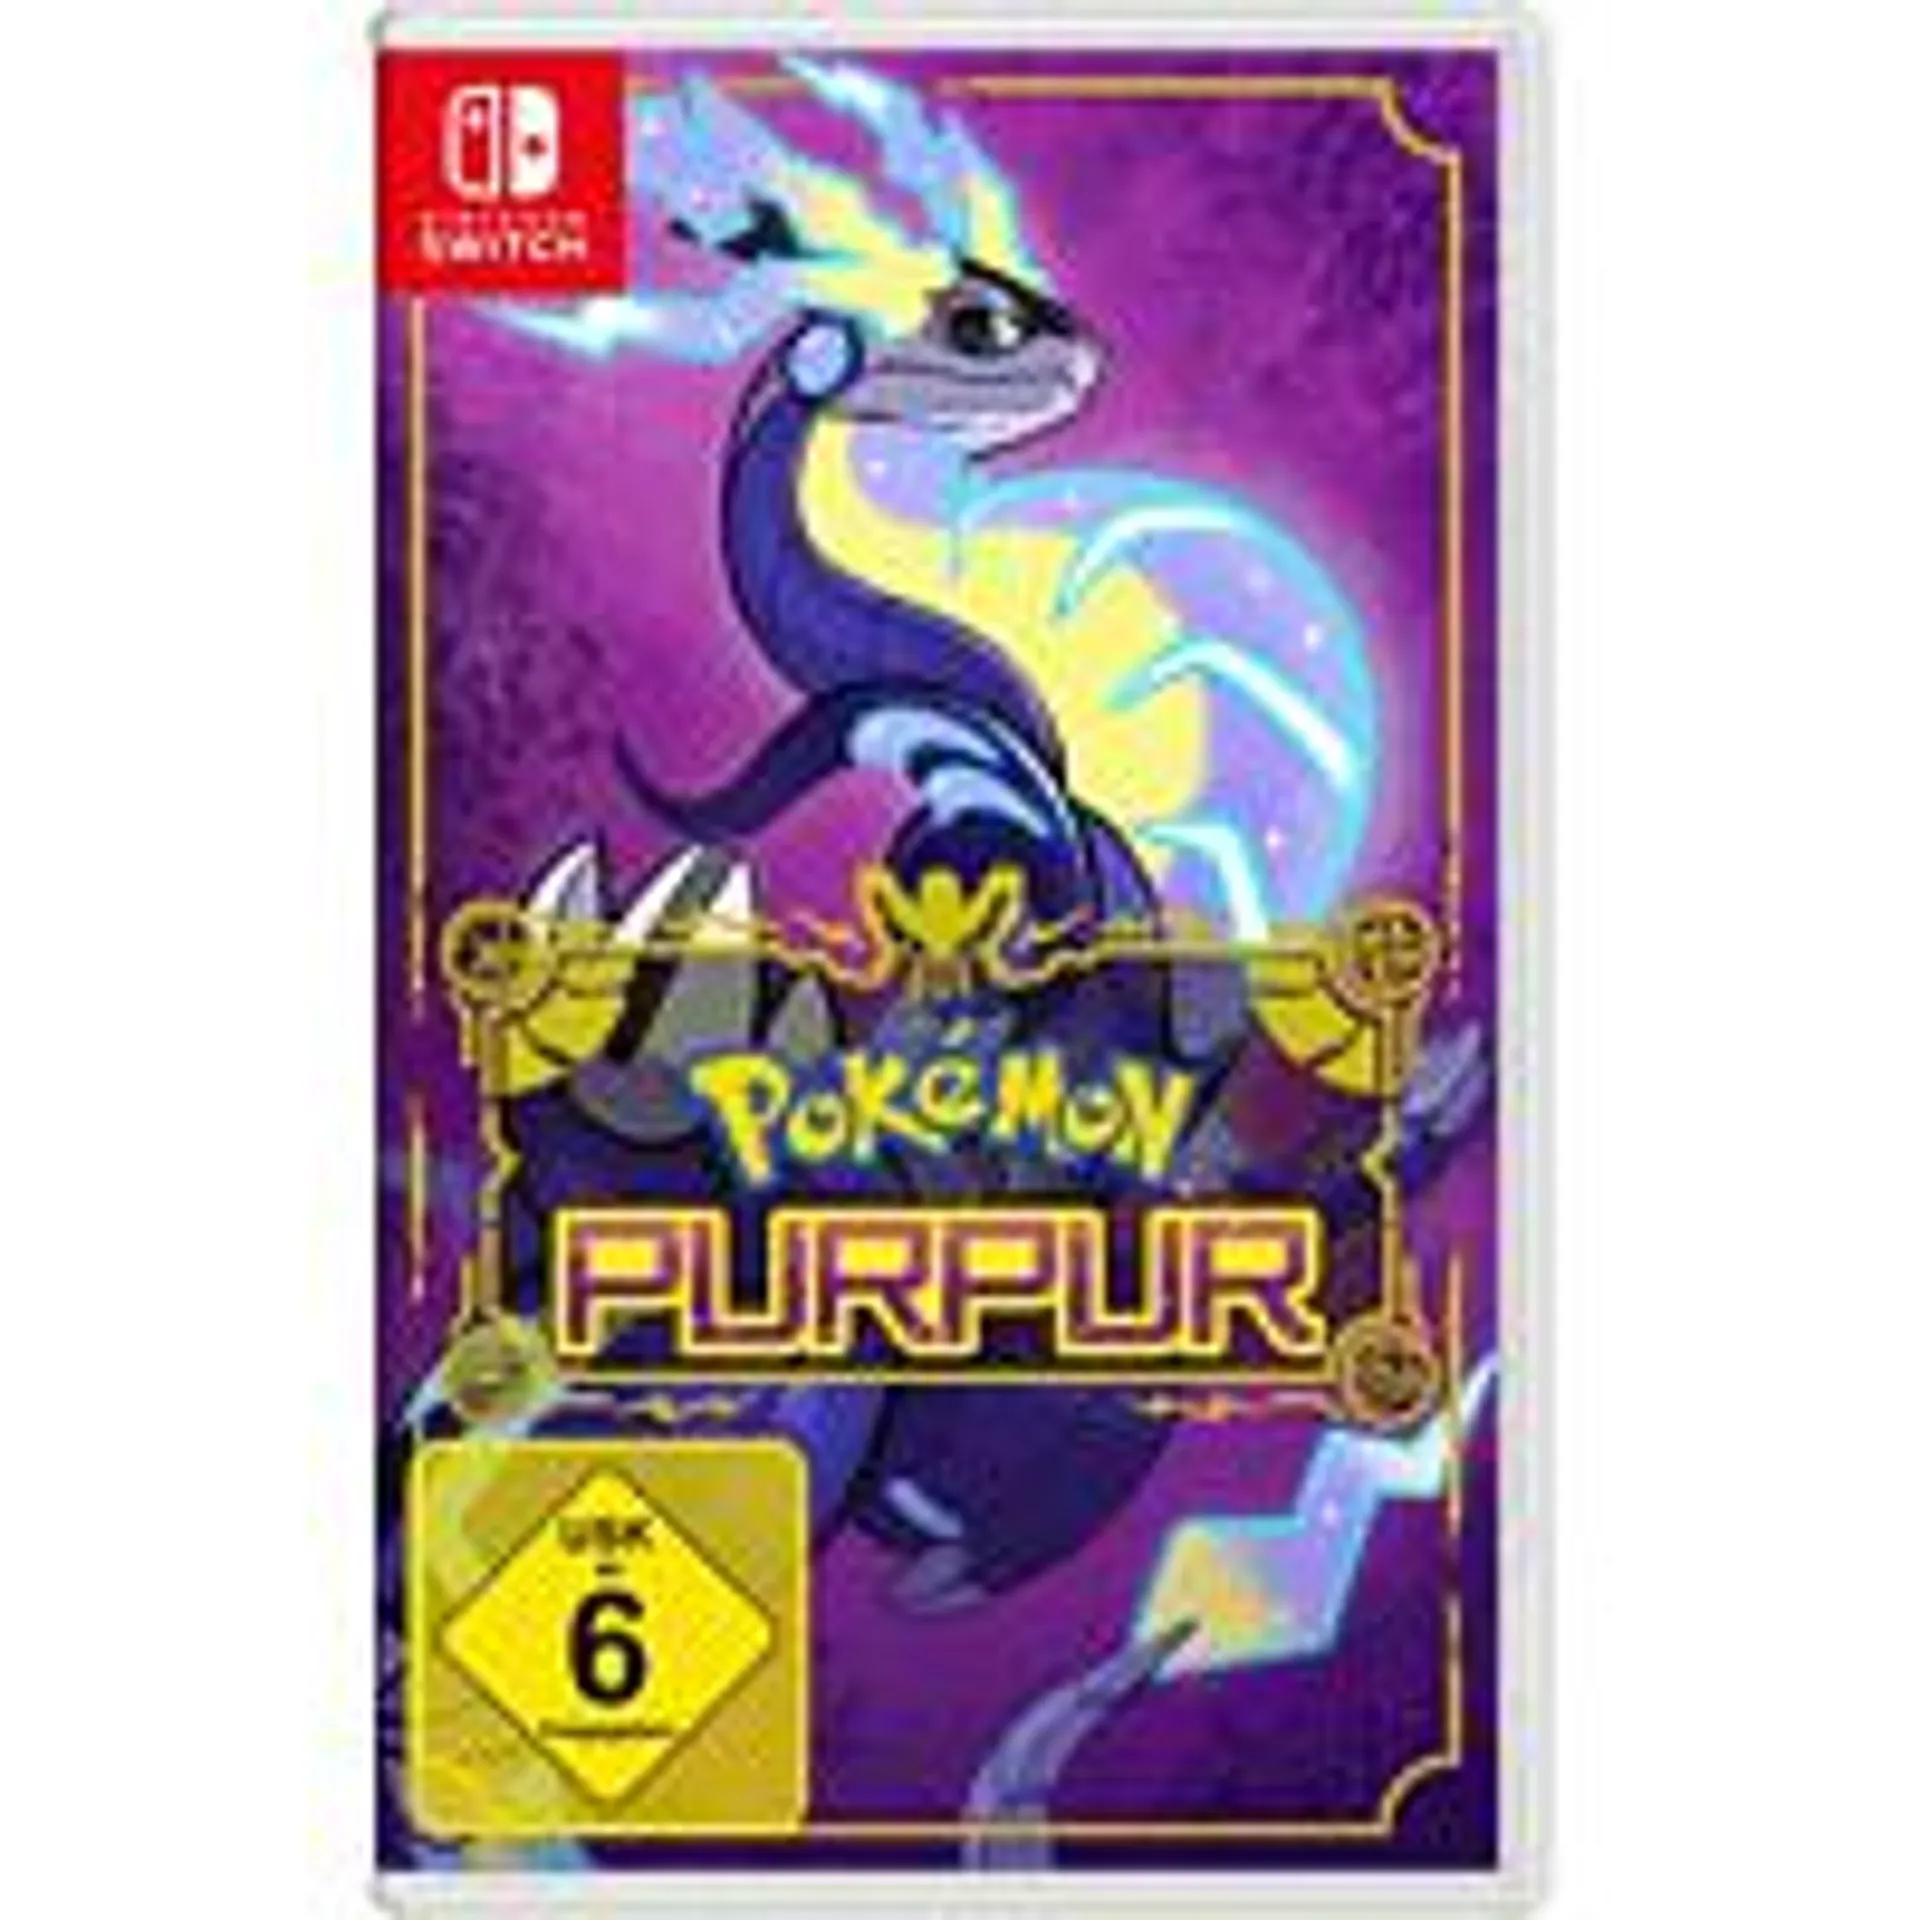 SW Pokémon Purpur - [Nintendo Switch]